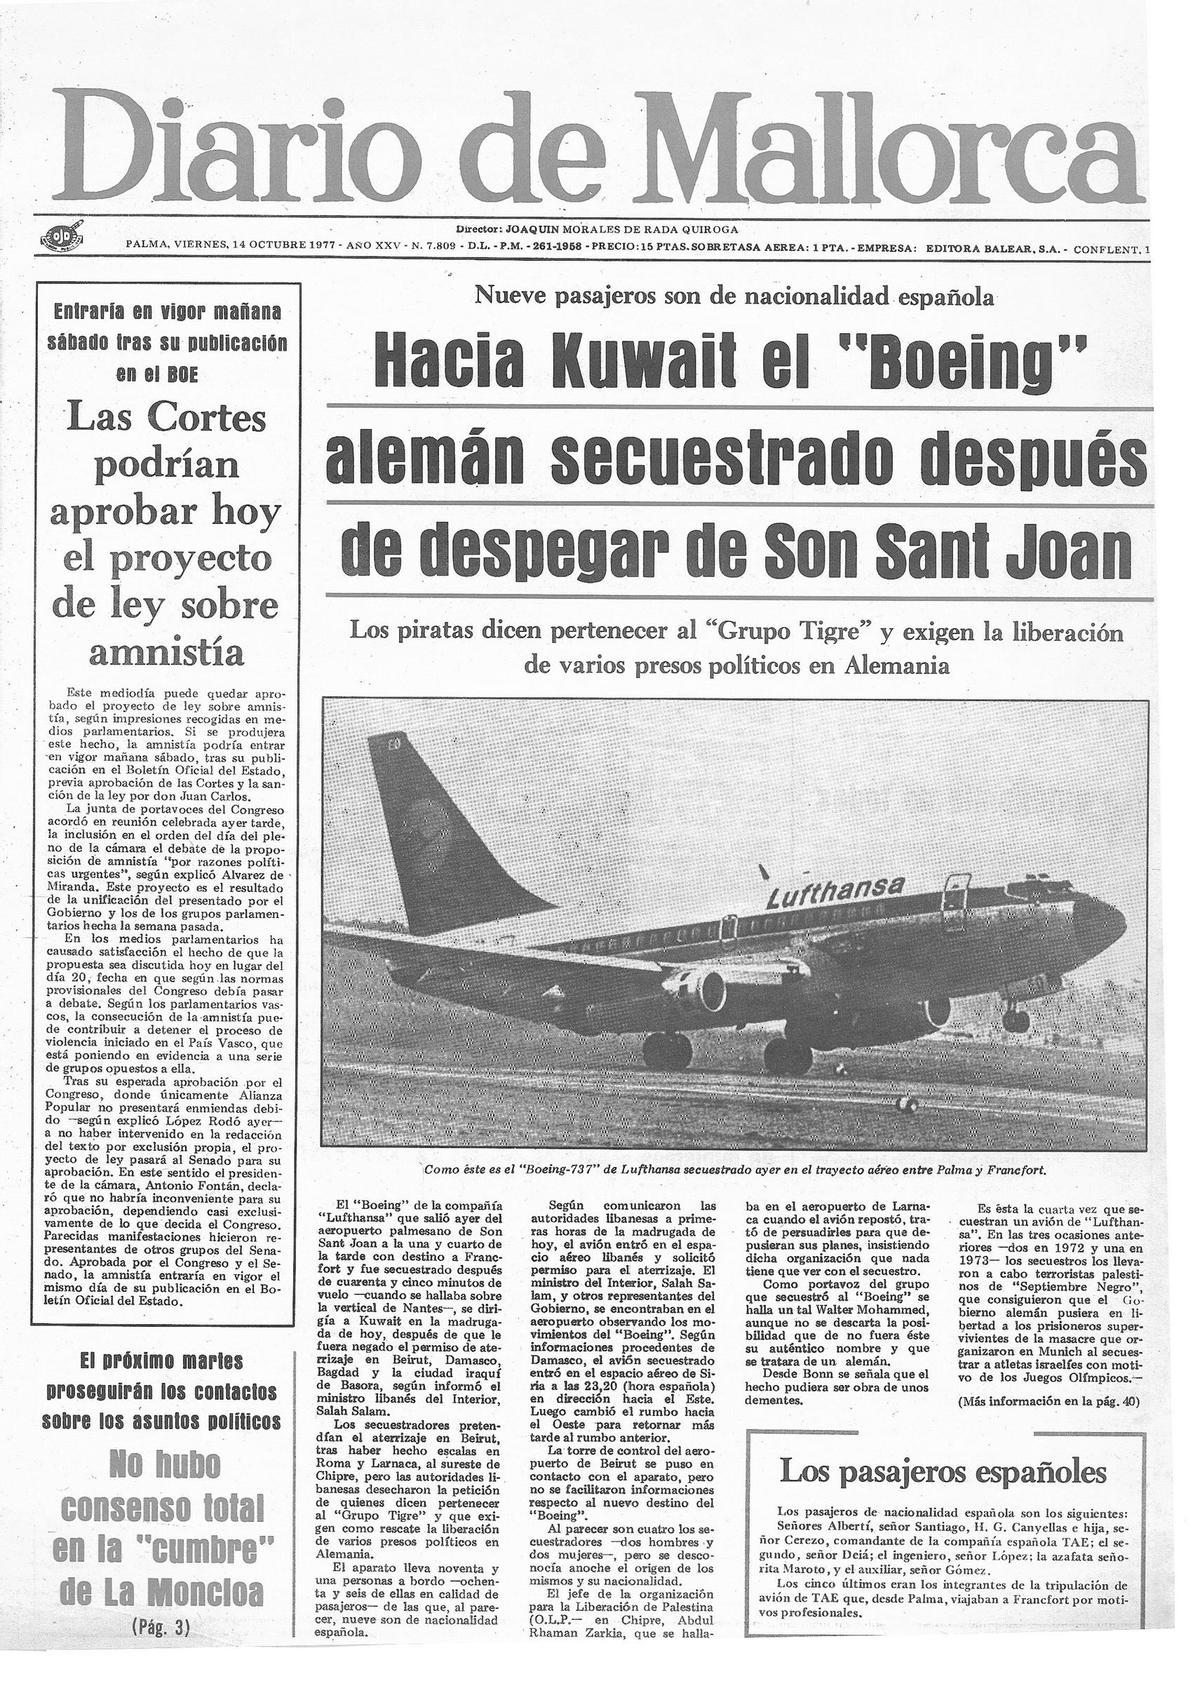 Portada de Diario de Mallorca del 14 de octubre de 1977, con la noticia del secuestro